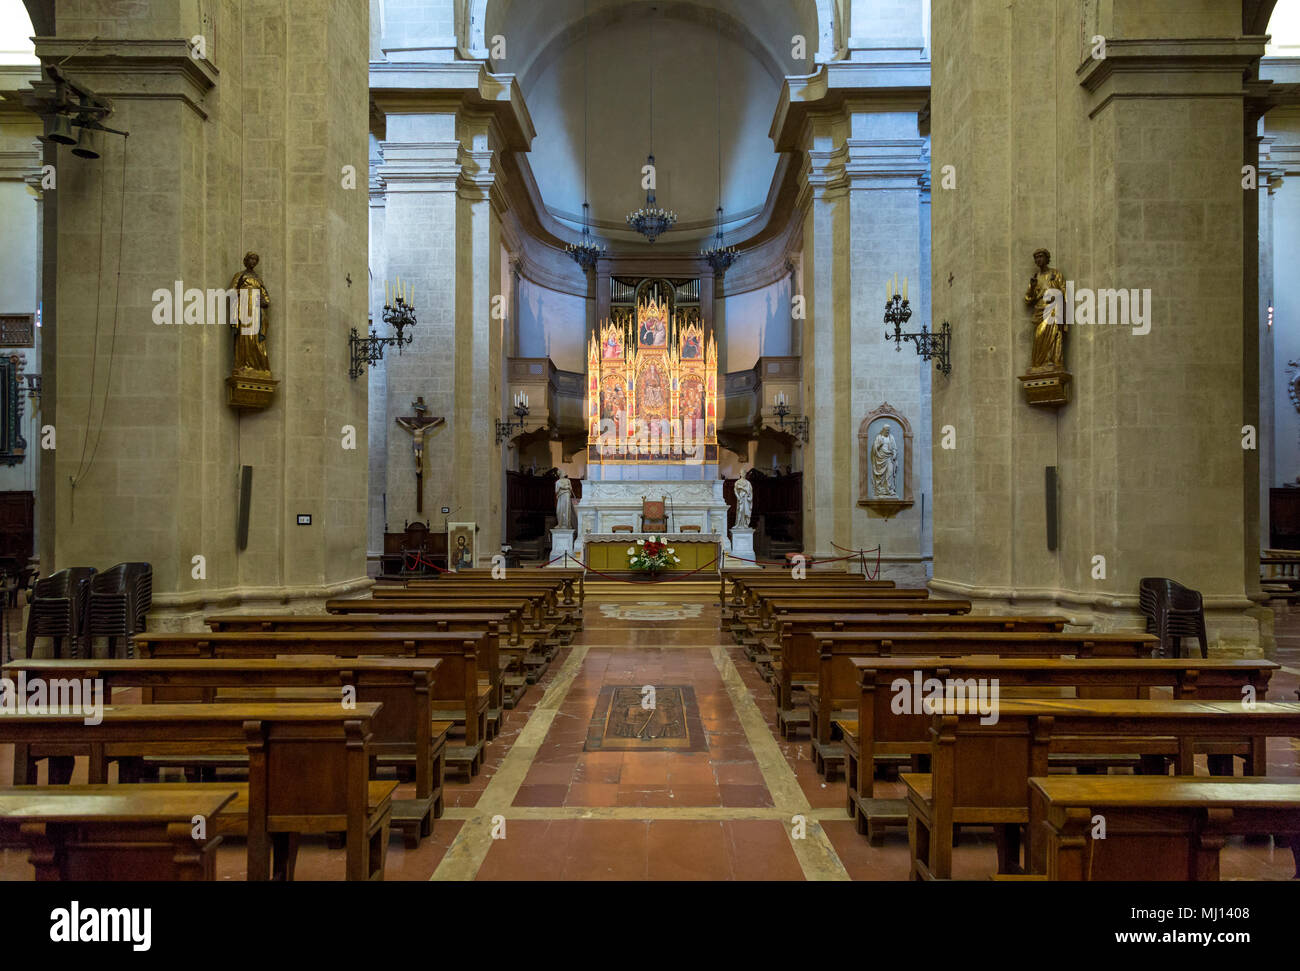 Interni/alter vista della Cattedrale di Santa Maria Assunta (completato nel 1680), Montepulciano, Toscana, Italia Foto Stock